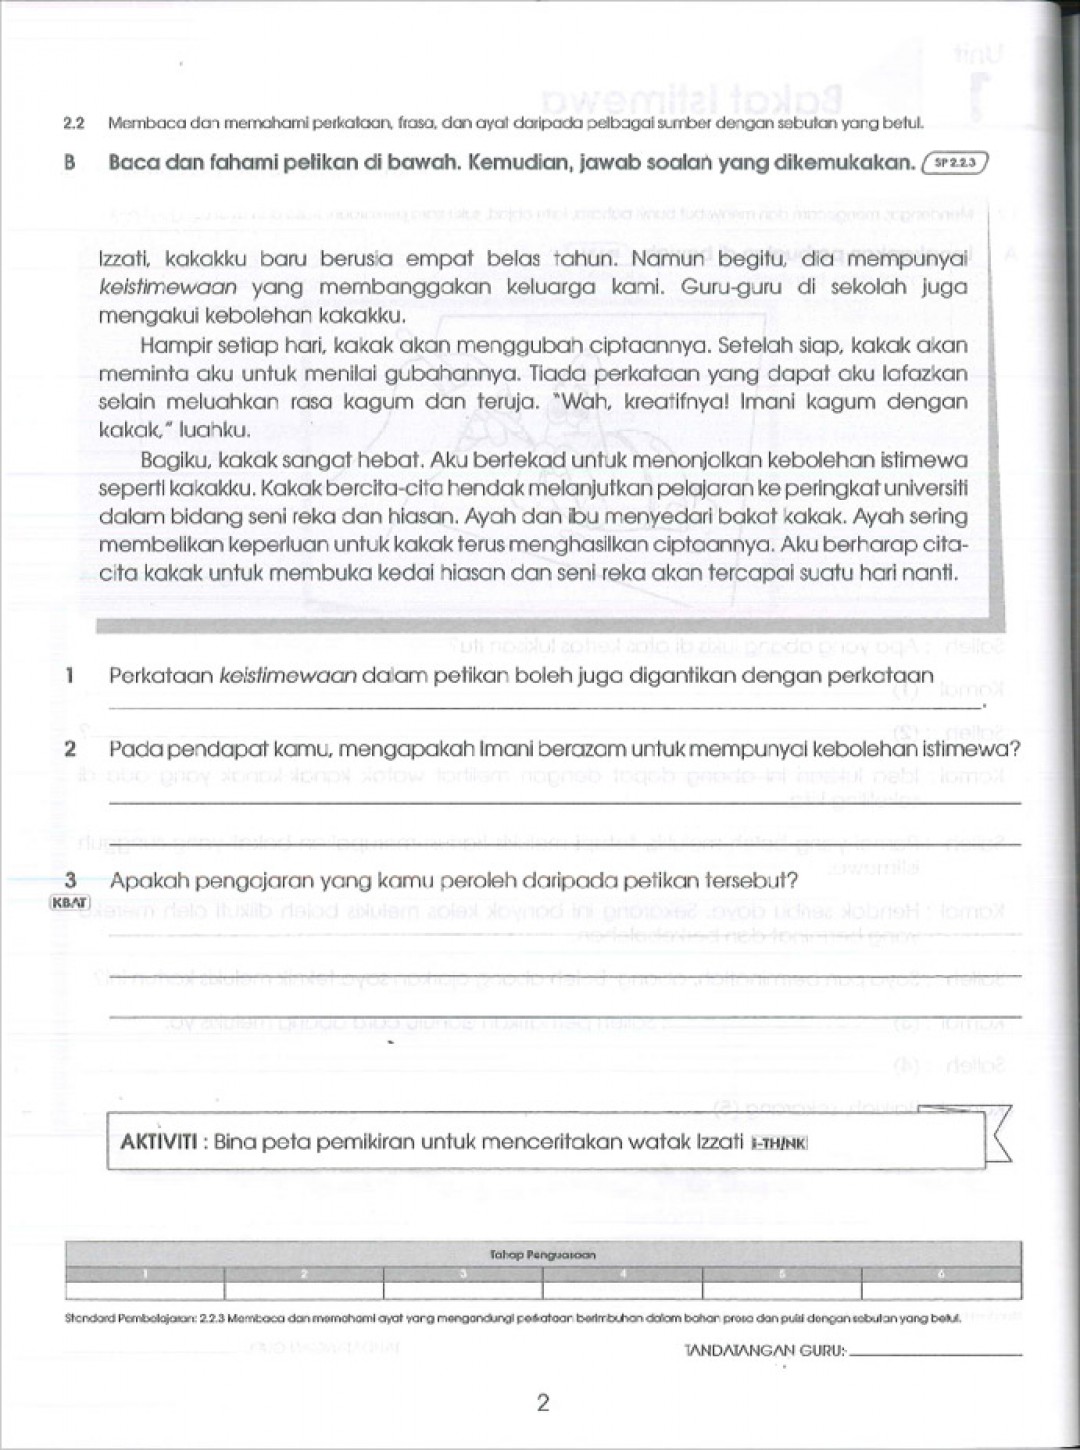 Praktis Standard Tahun 6 - Bahasa Melayu